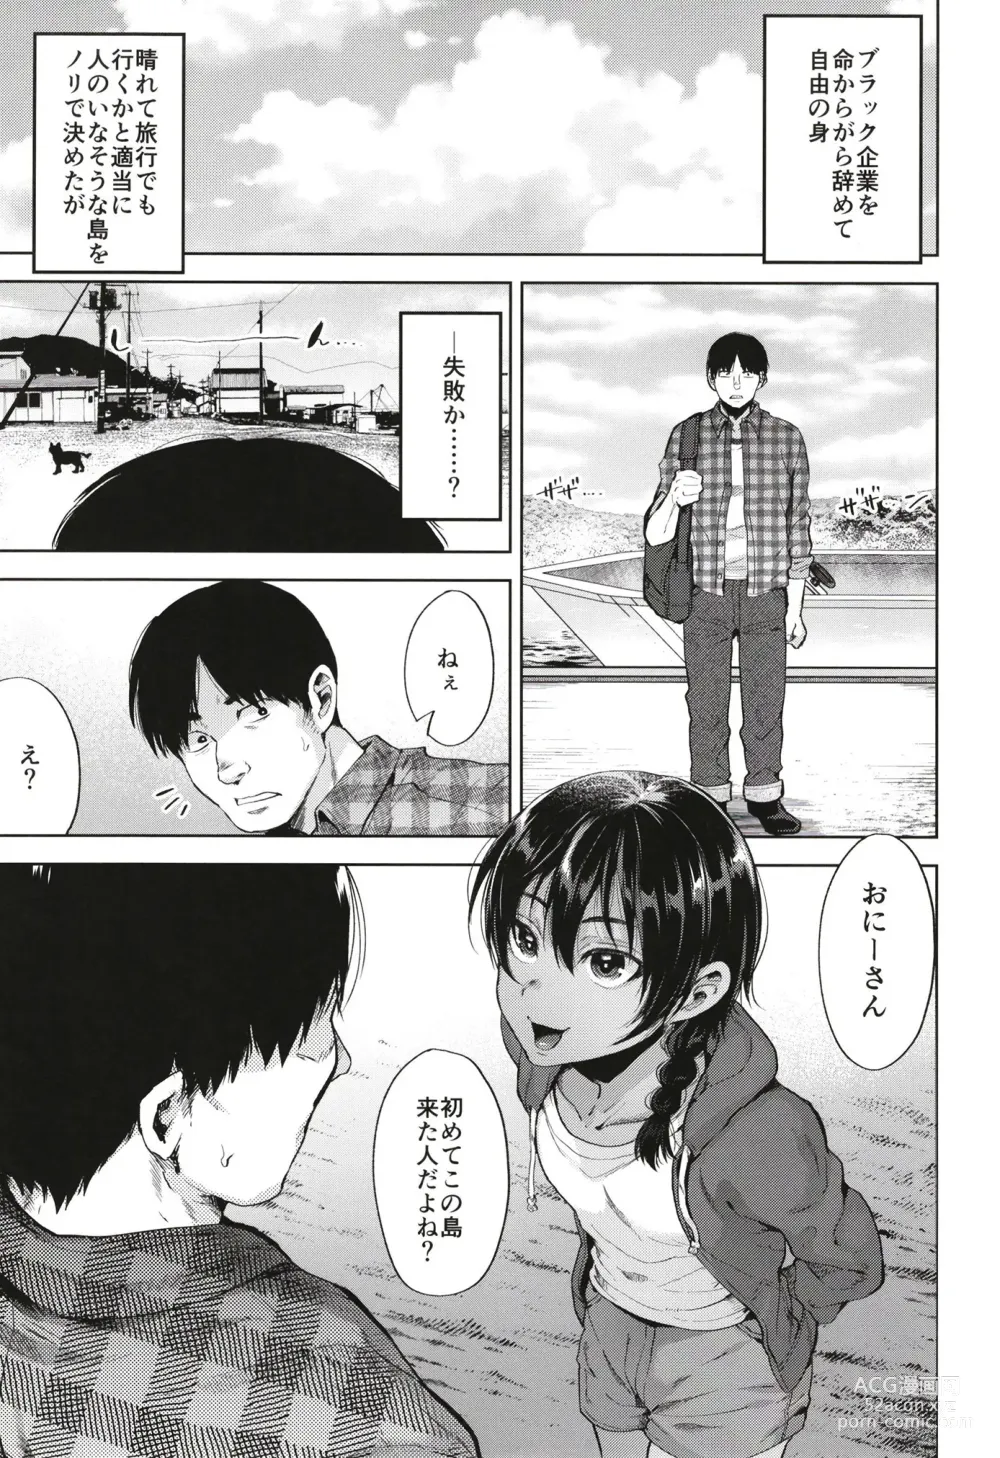 Page 5 of doujinshi Onigo matsurinoyoru